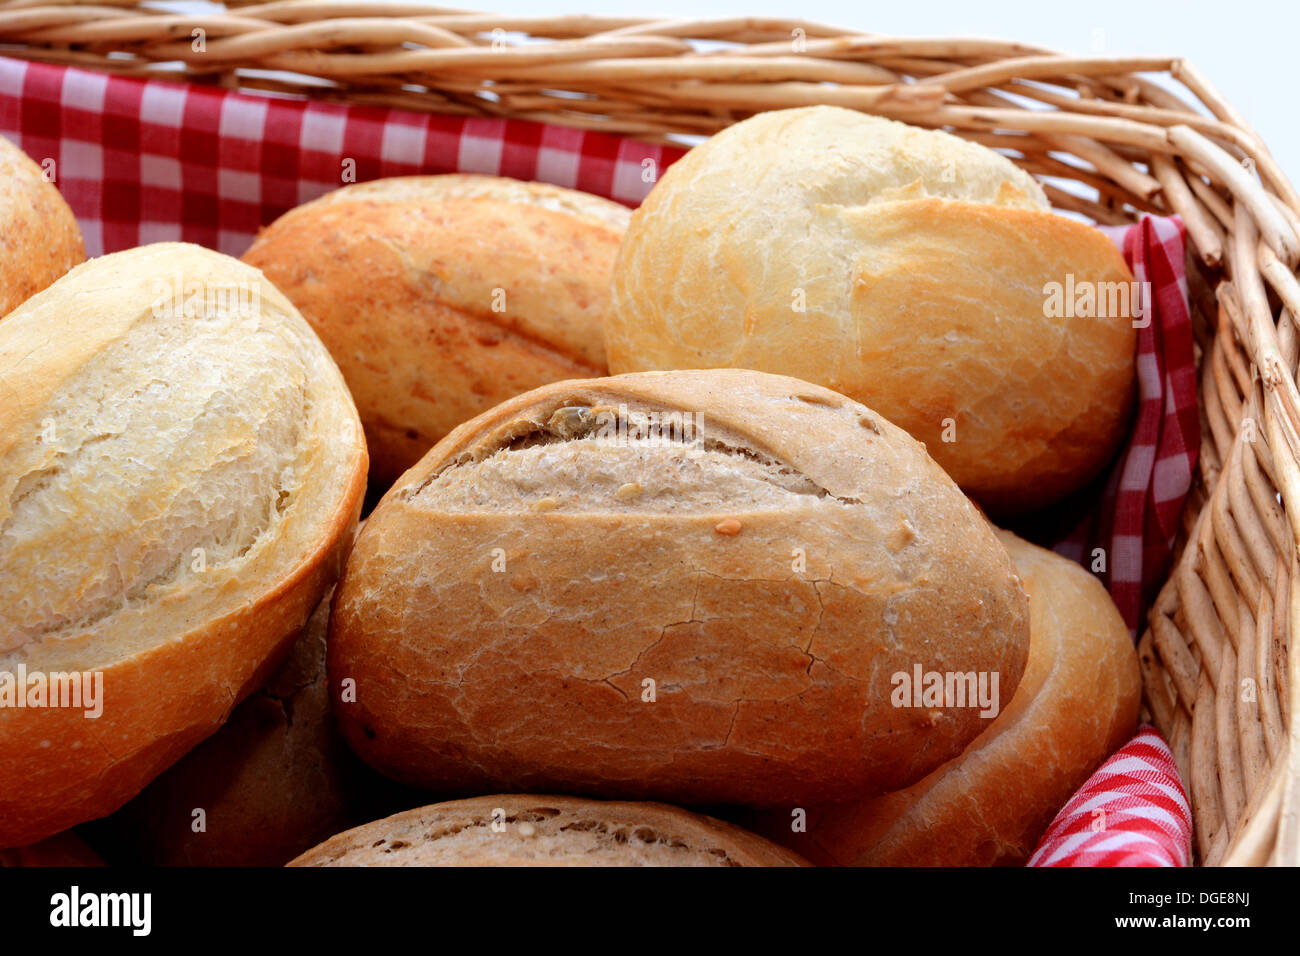 Closeup of tasty fresh crusty bread rolls in a wicker basket Stock Photo